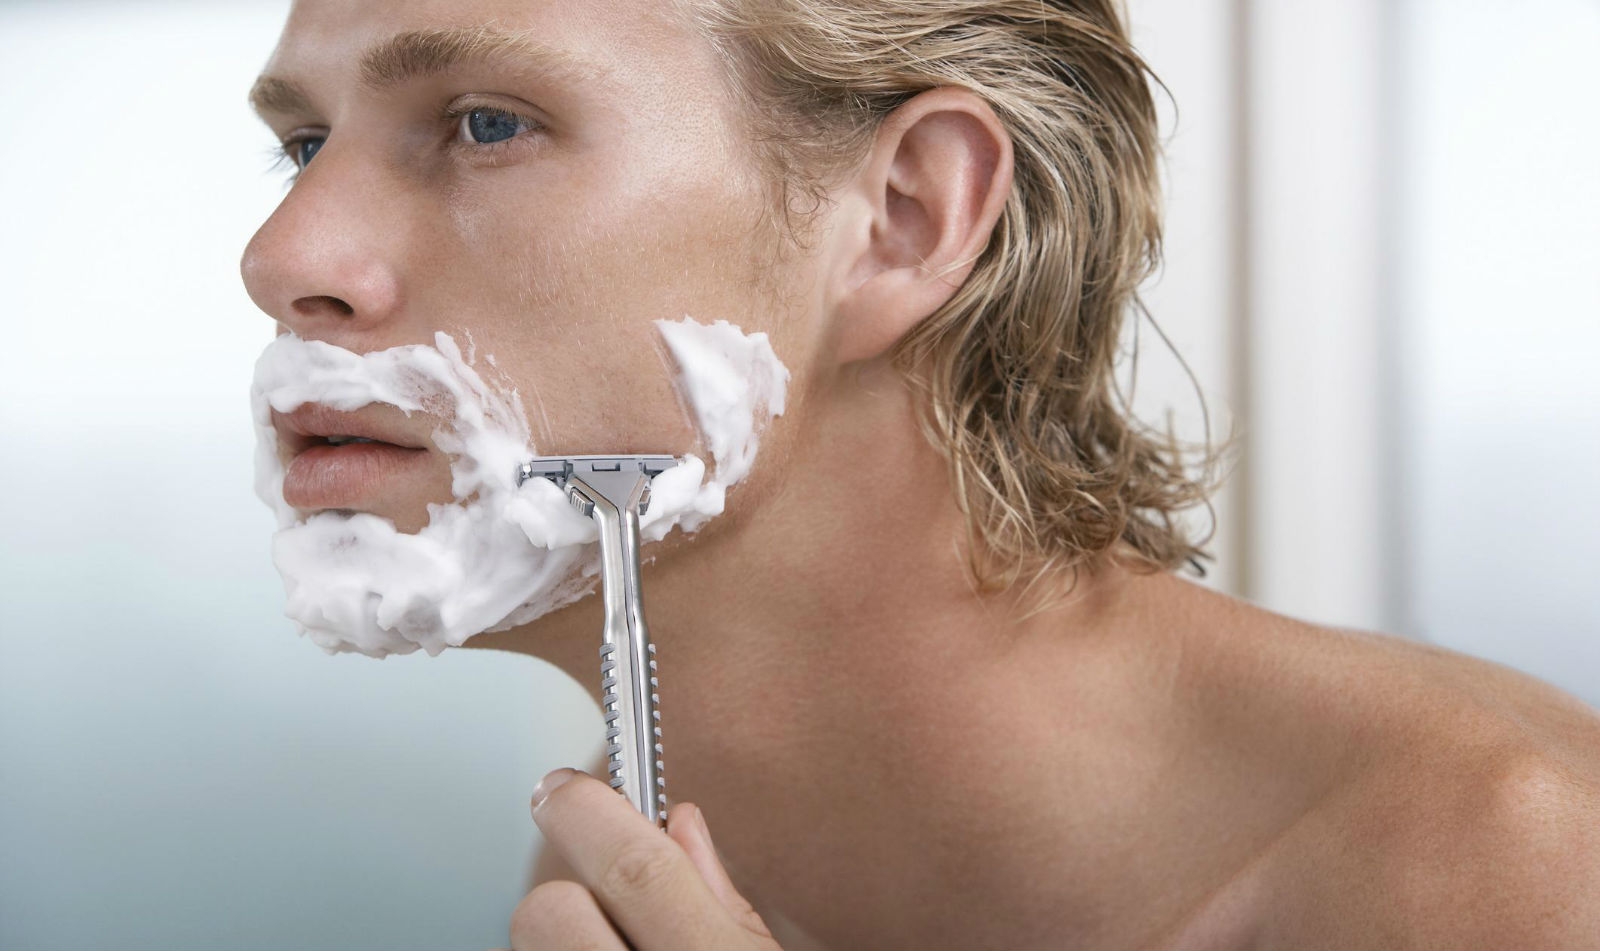 Men's Shaving Kit